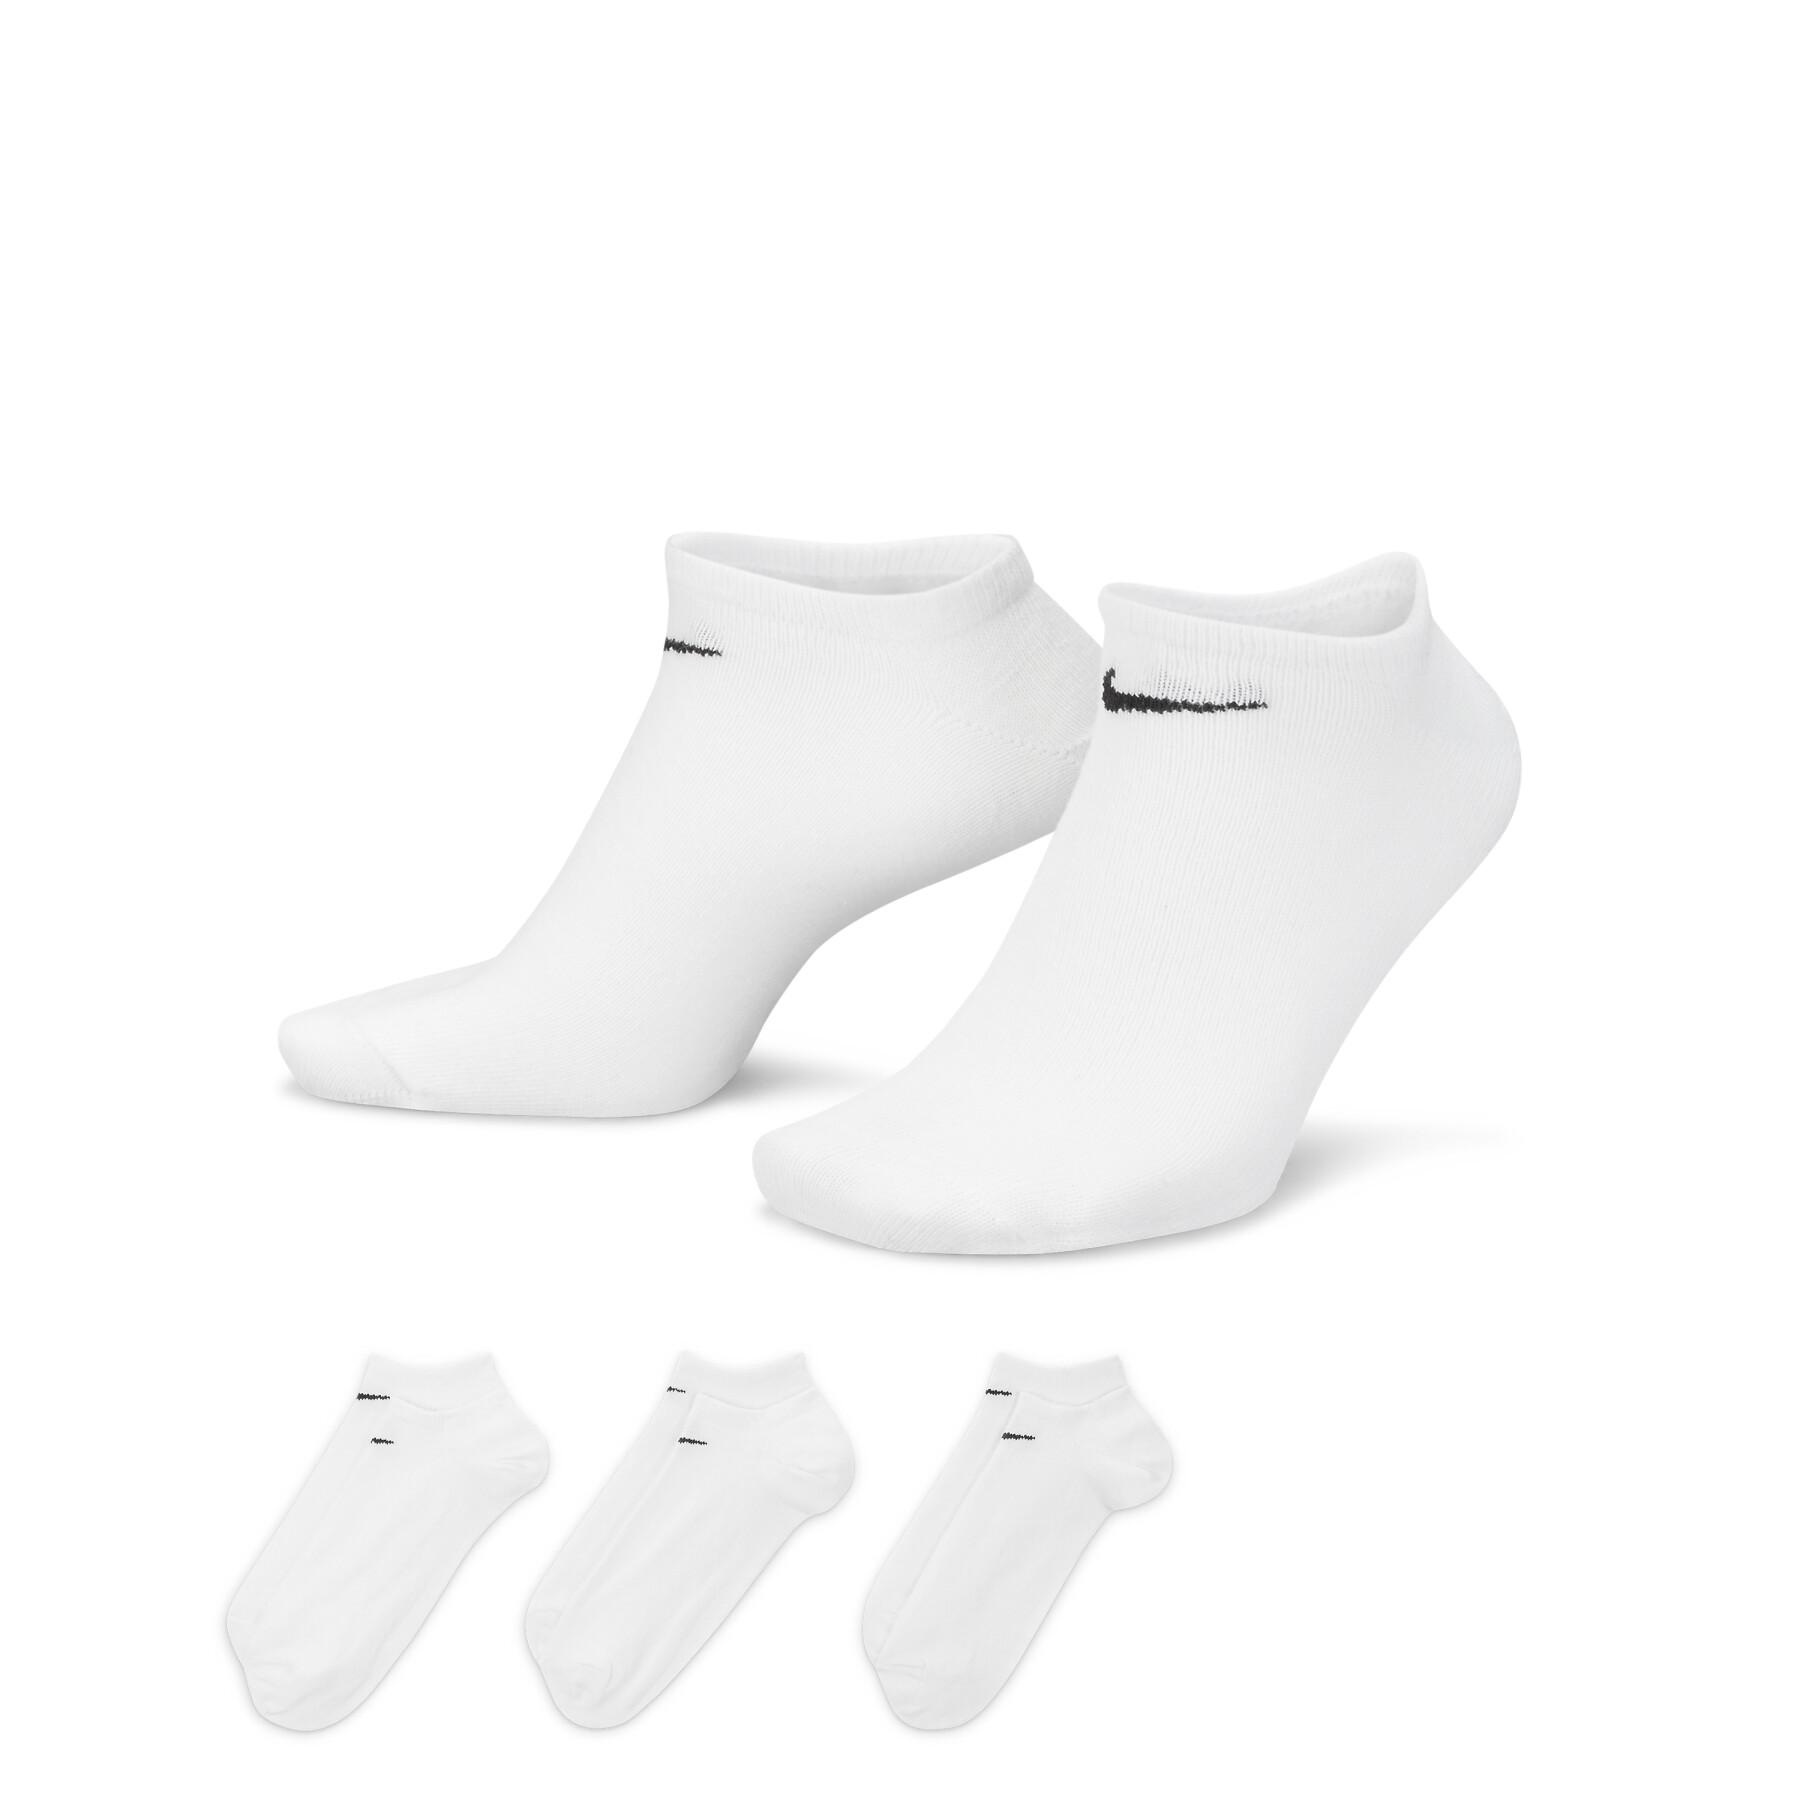 Violín canal Recuperar Lote de 3 pares de calcetines bajos Nike Lightweight - Ropa